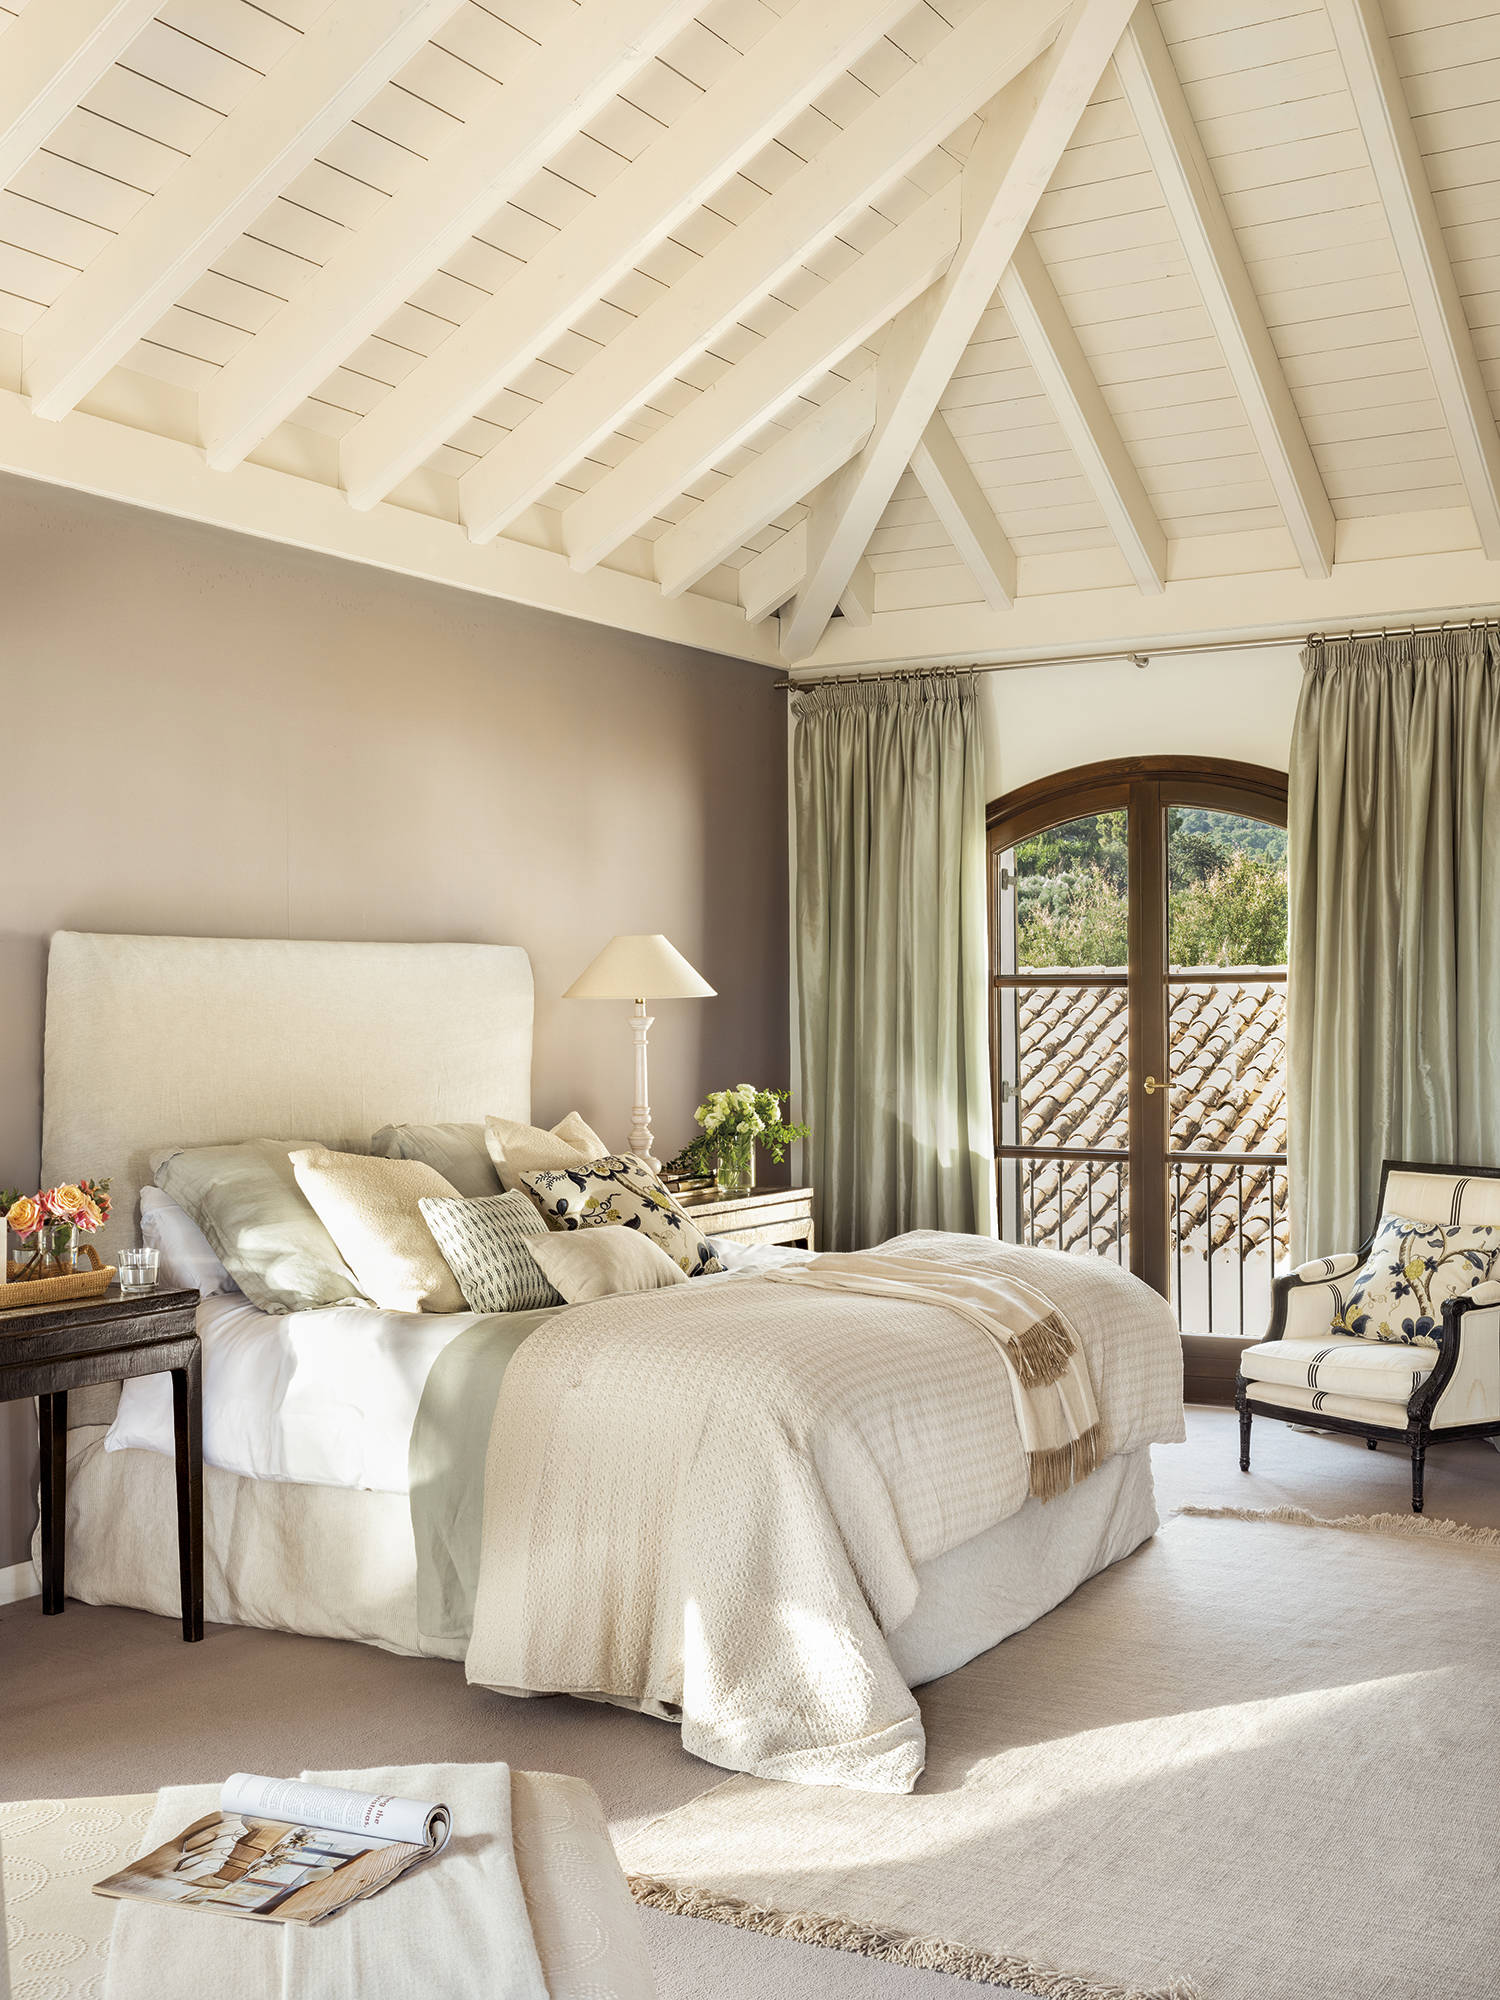 Dormitorio principal con cama, aflombra, butaca, cabecero blanco y techo abuhardillado con vigas pintadas de blanco